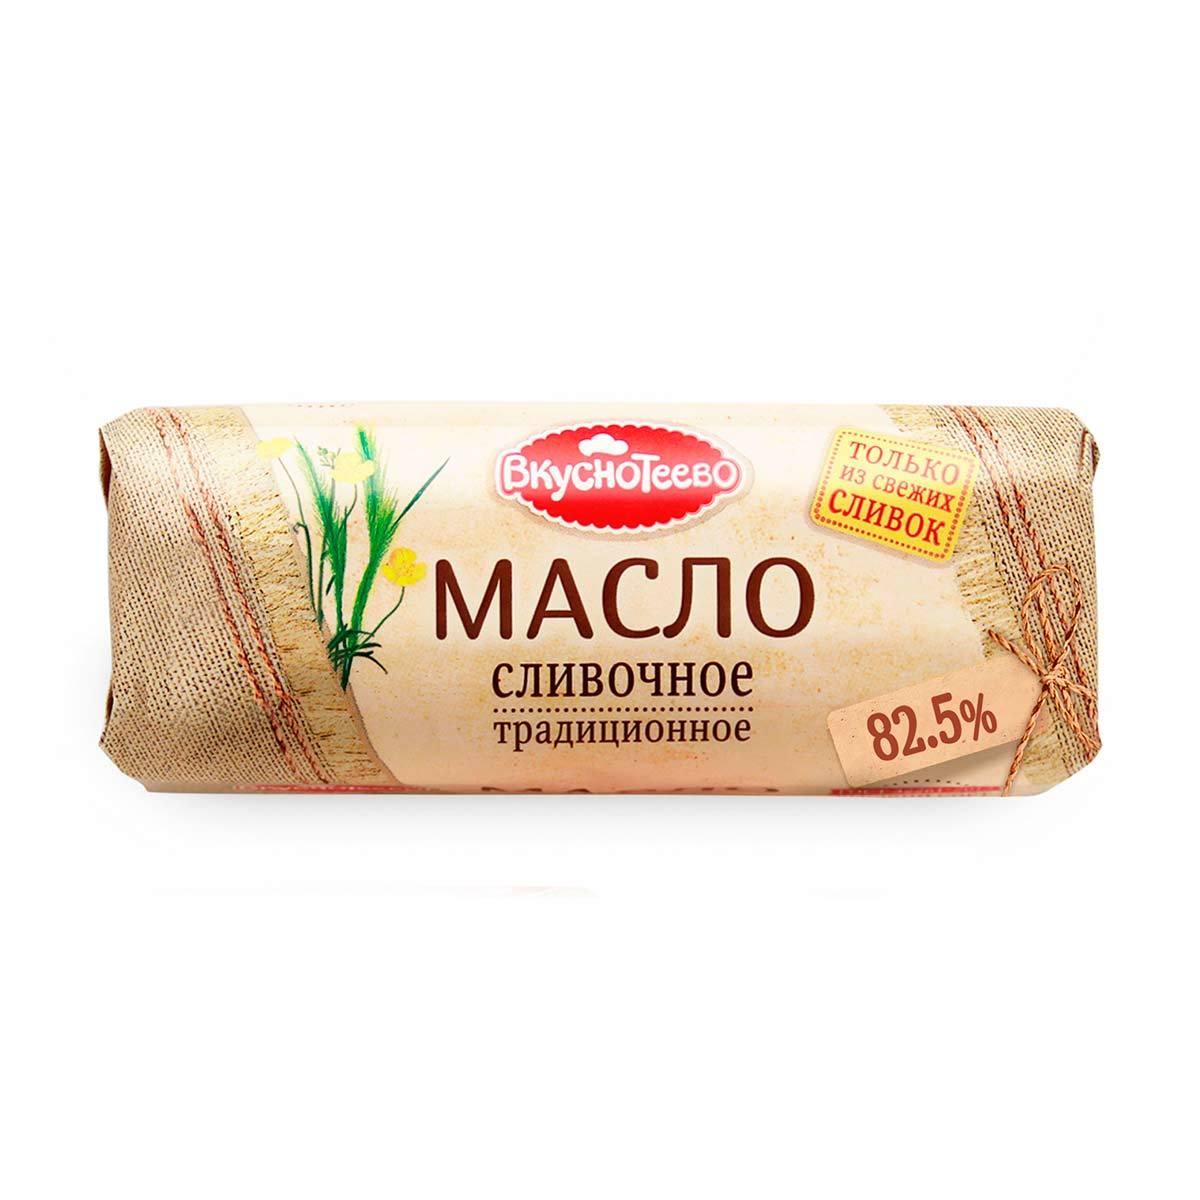 Масло Вкуснотеево сливочное, традиционное, 82,5%, 400 г